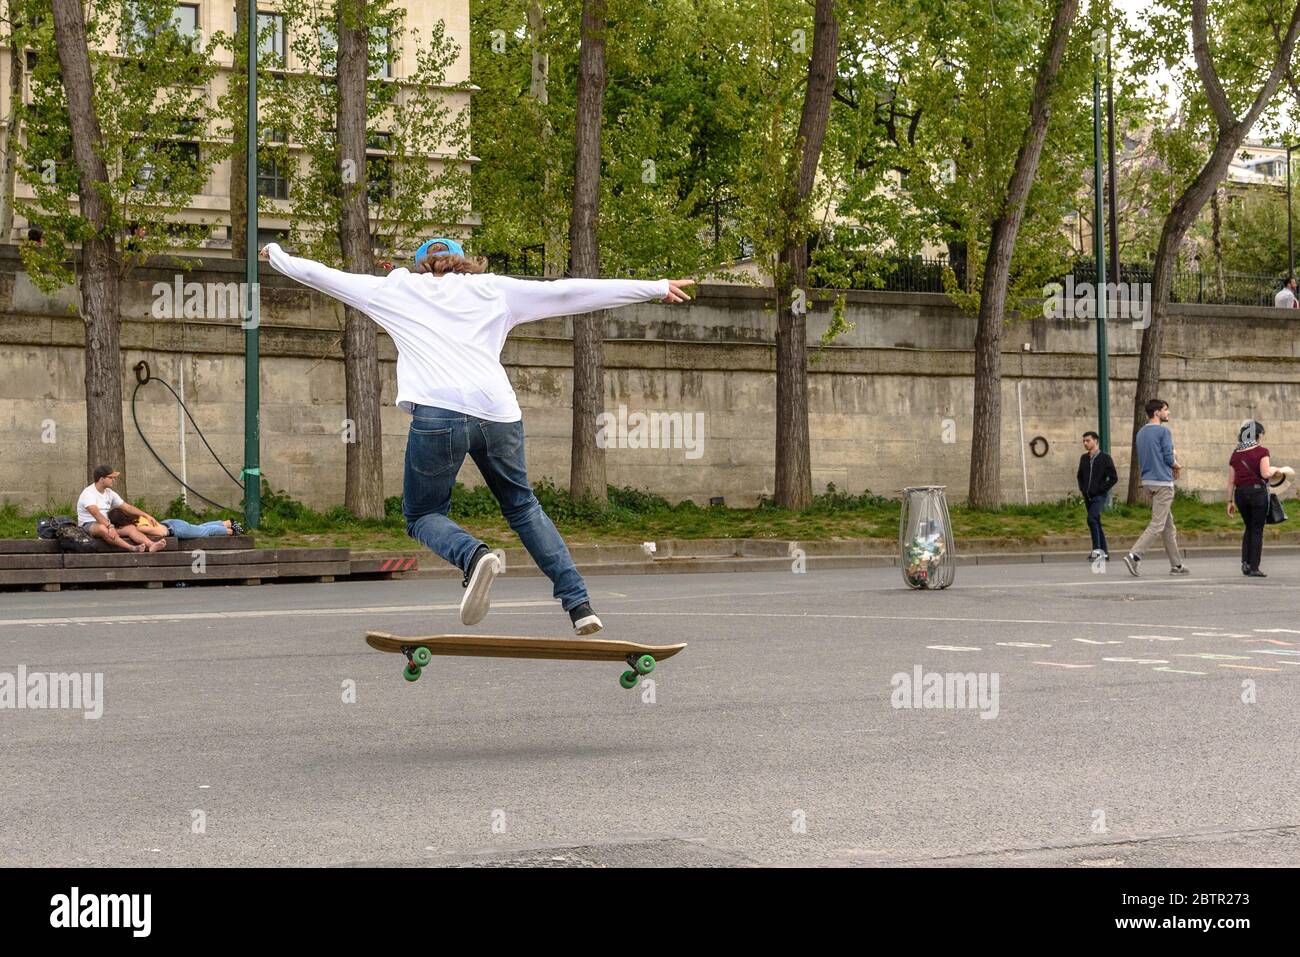 Un skateboarder exécutant un ollie sur le remblai de Quai Anatole France Banque D'Images